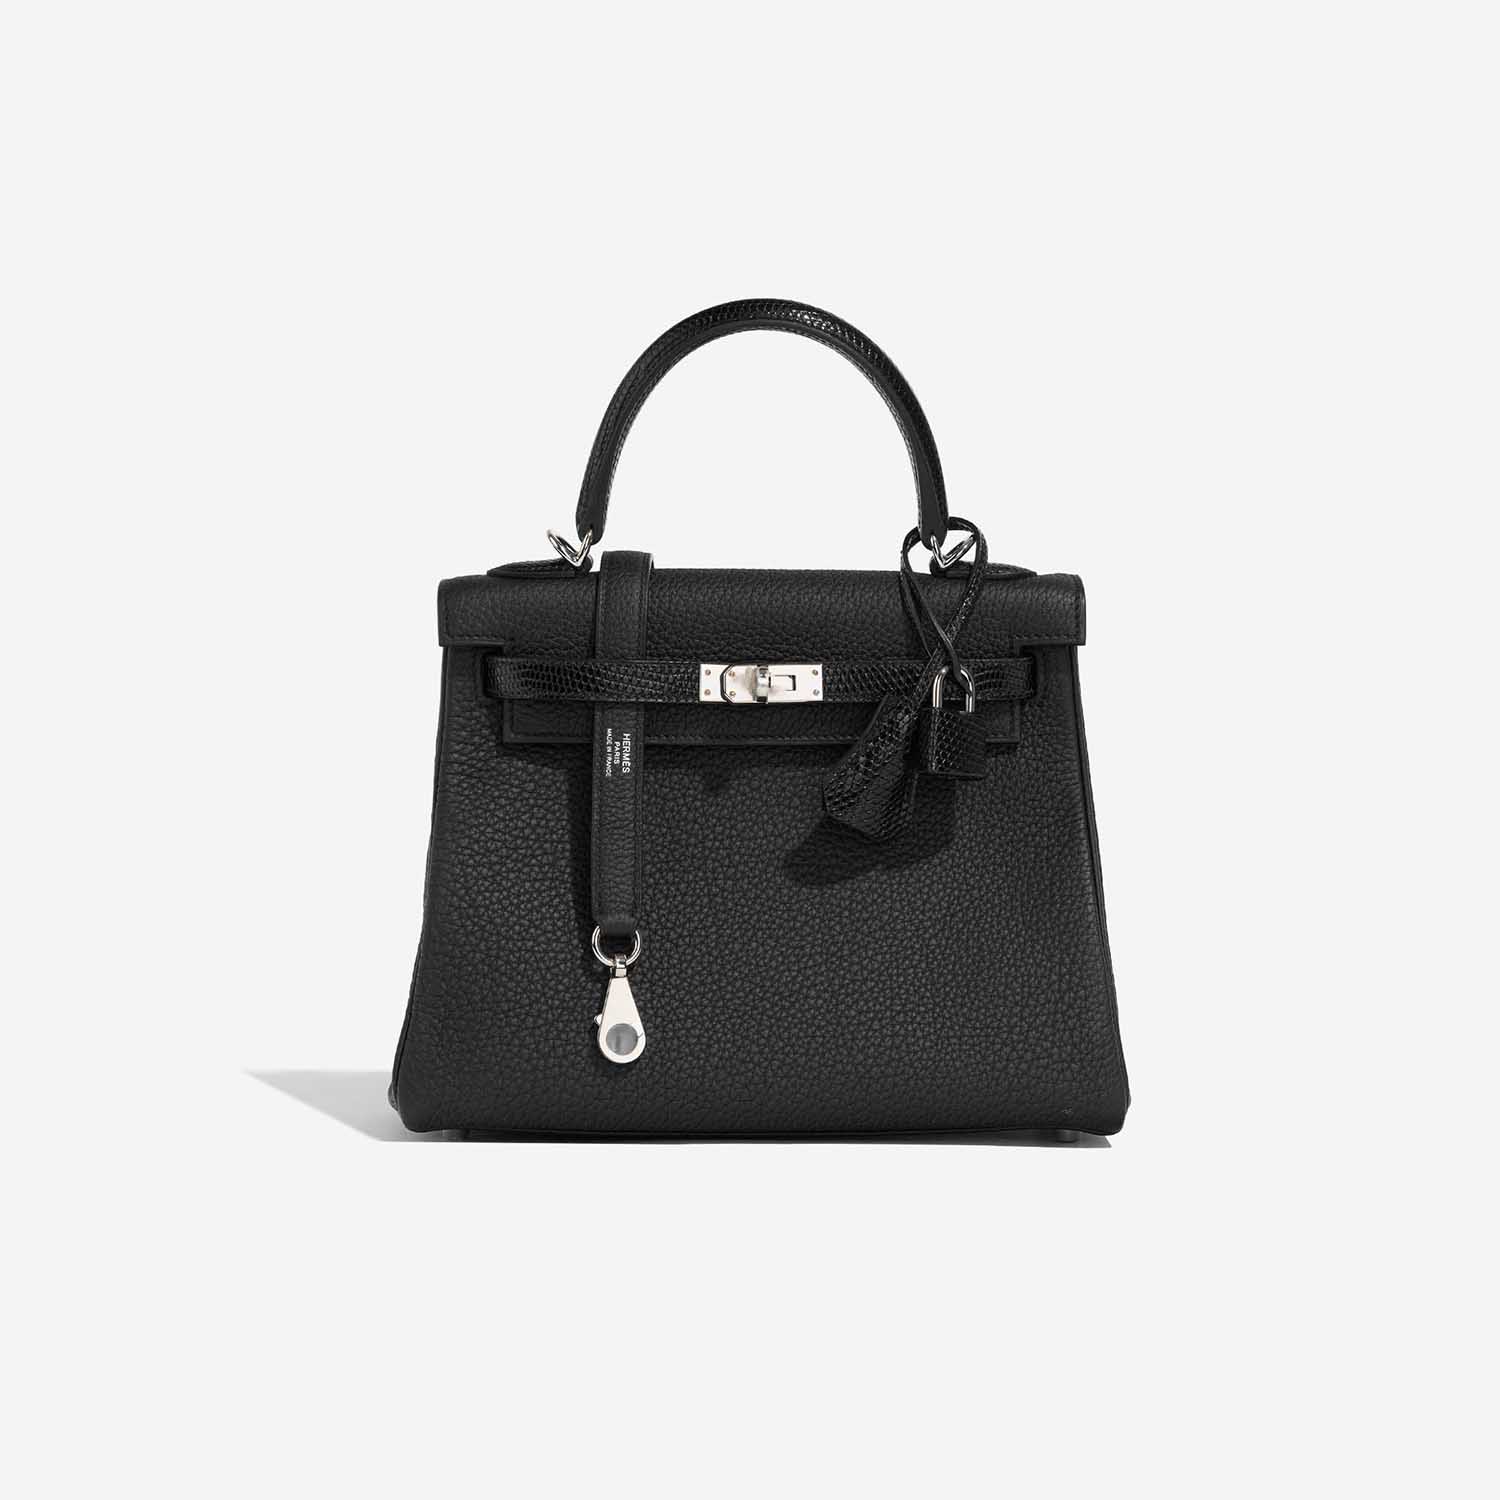 Hermès KellyTouch 25 Black Front | Verkaufen Sie Ihre Designertasche auf Saclab.com